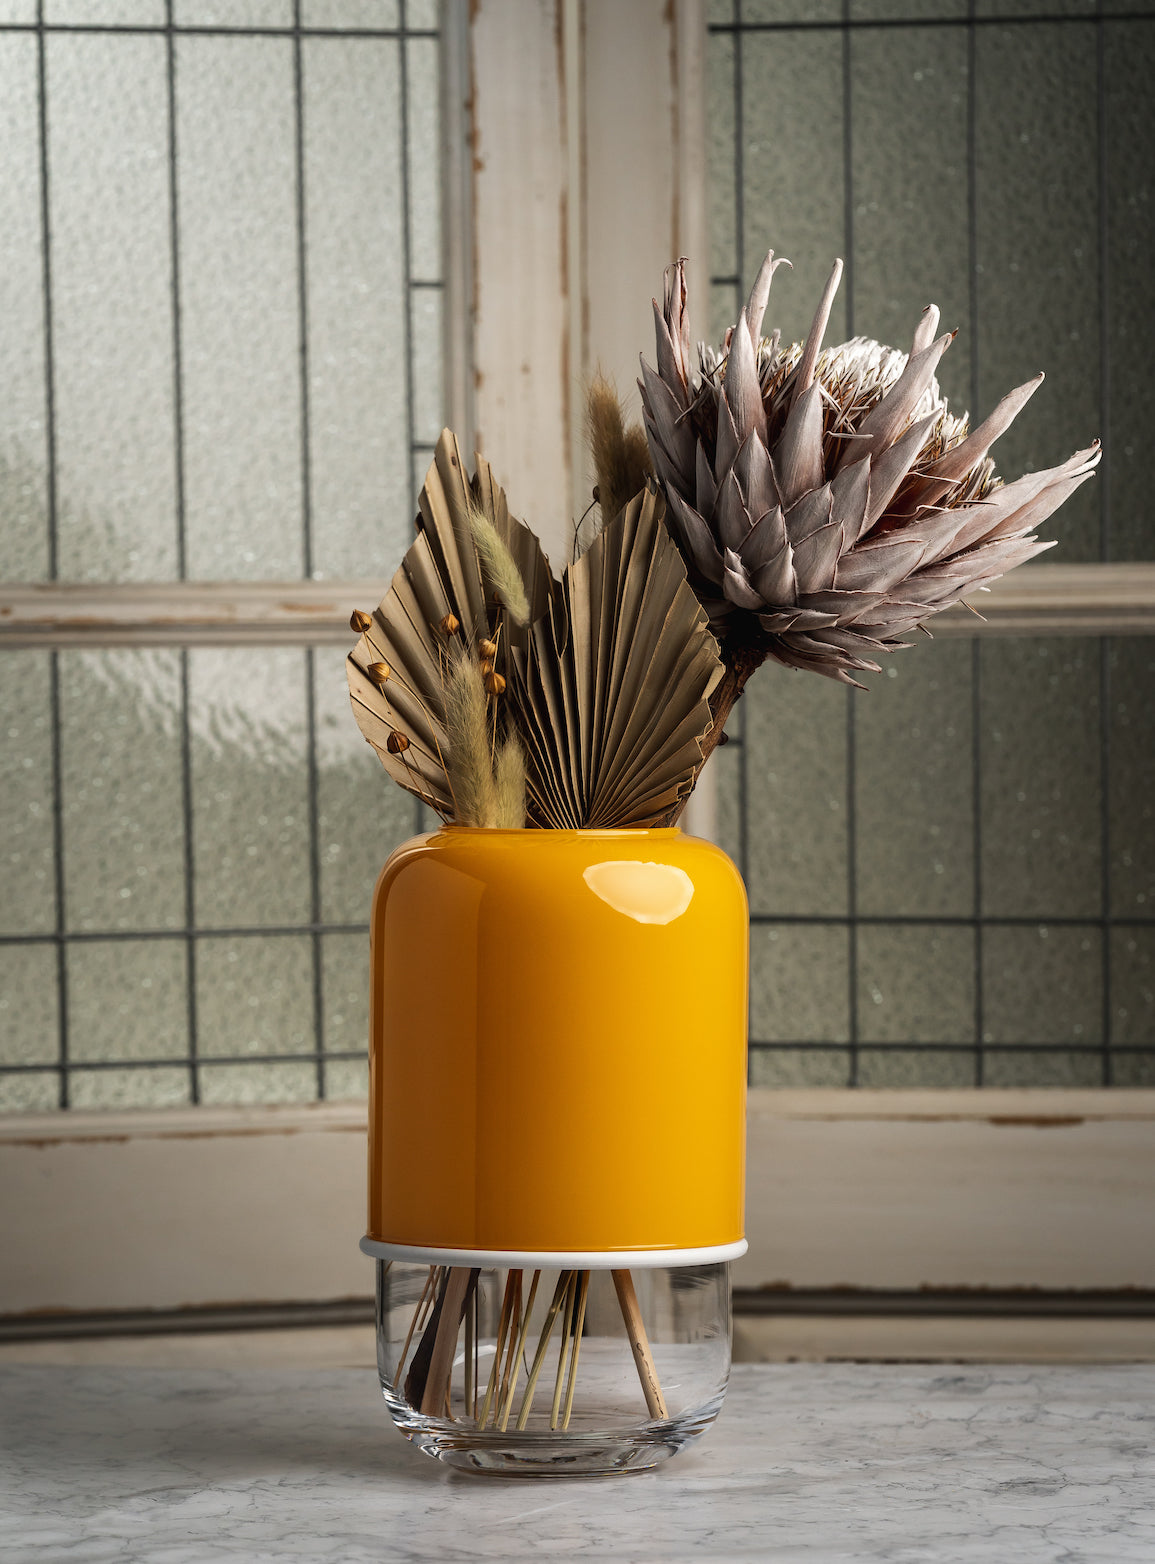 Muurla Design Capsule Vase in Mustard